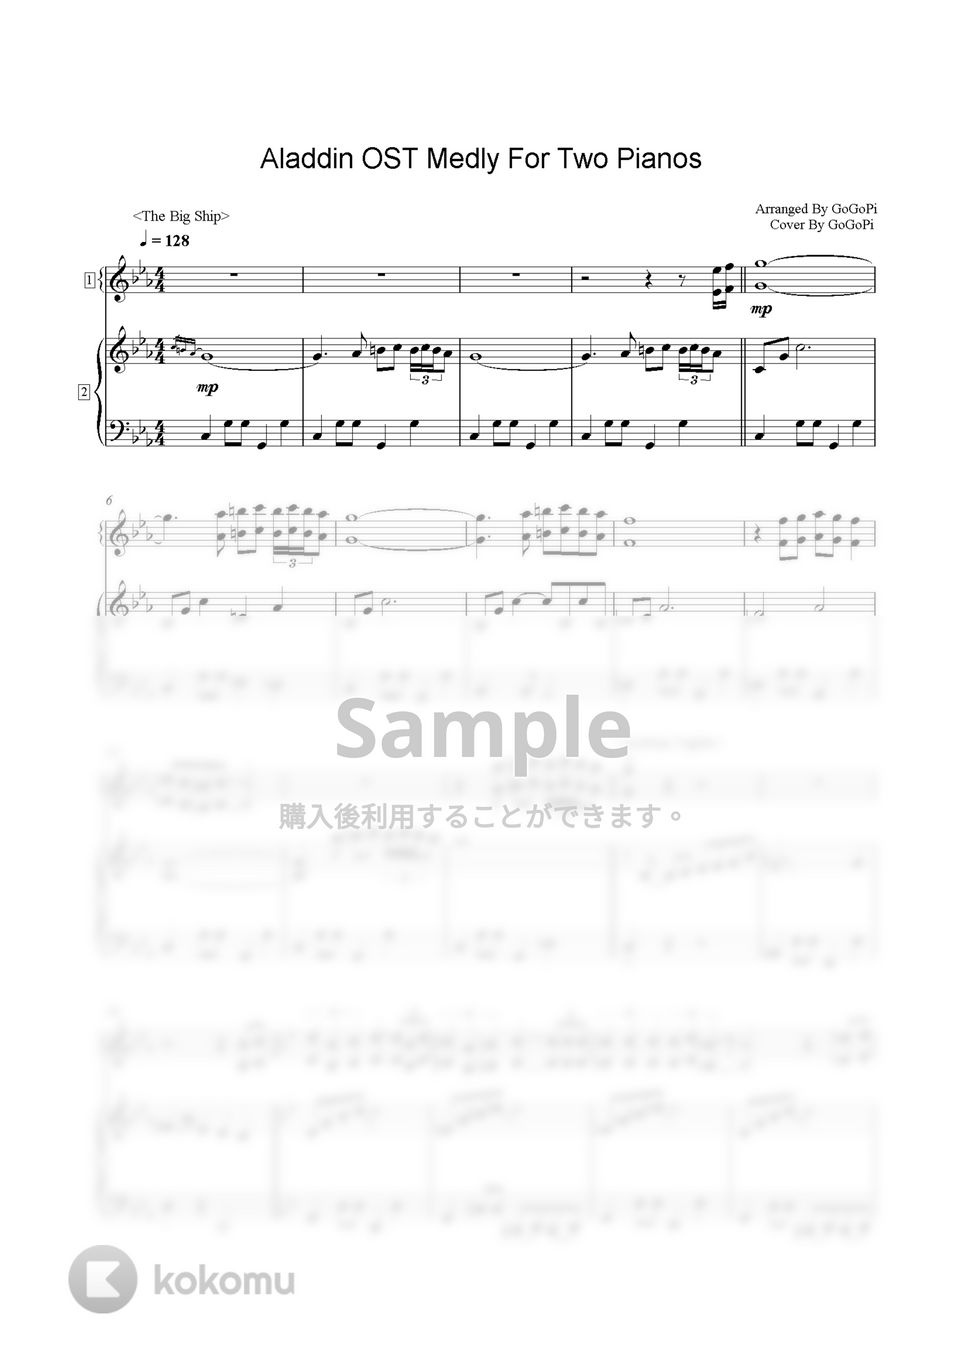 アラジン - アラジンメドレー (2台ピアノ) by GoGoPiano